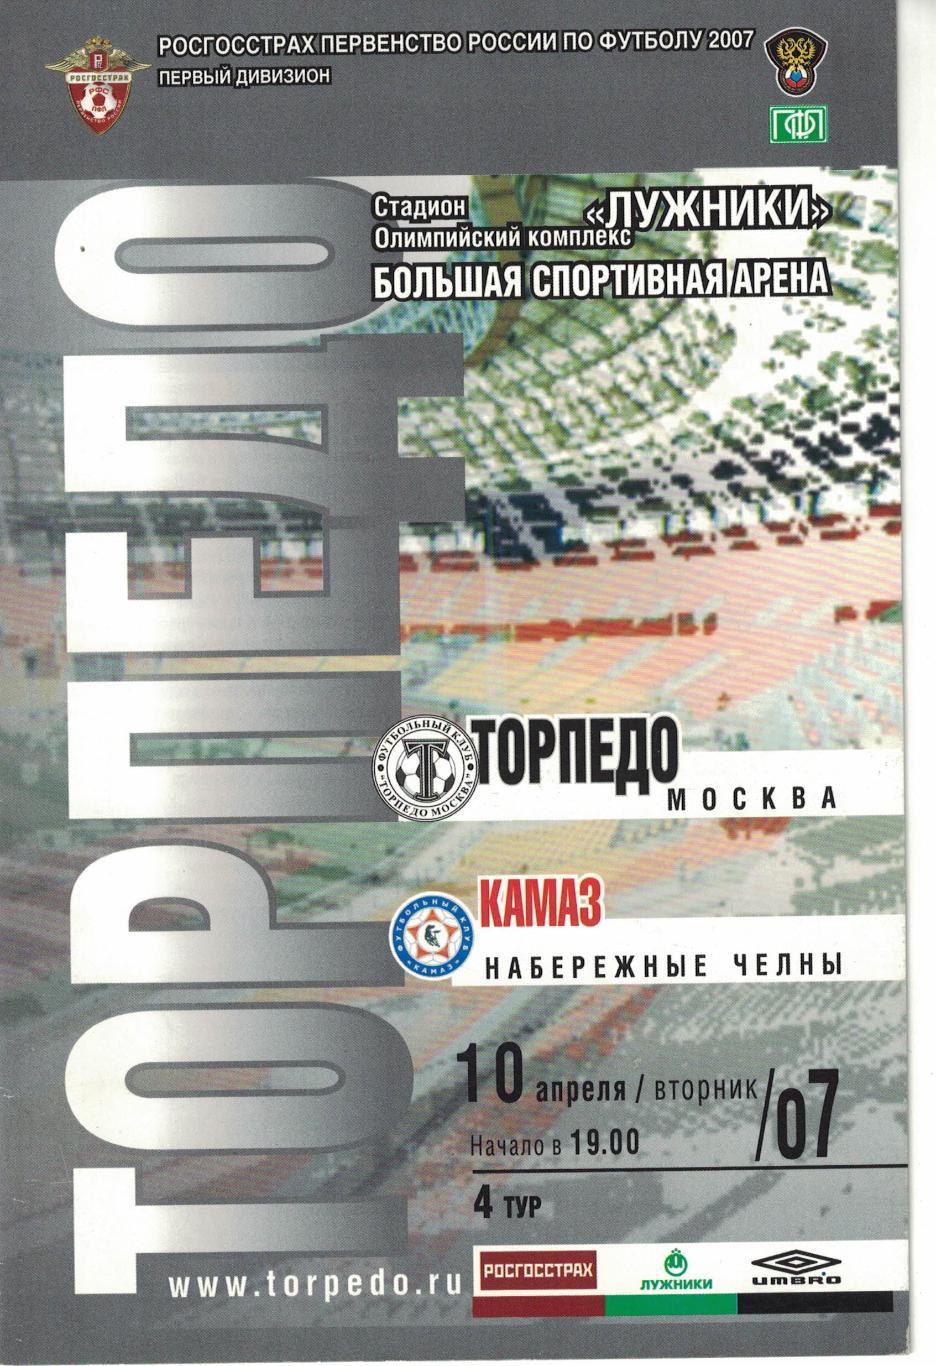 Торпедо Москва - КАМАЗ Набережные челны 10.04.2007 Первенство России